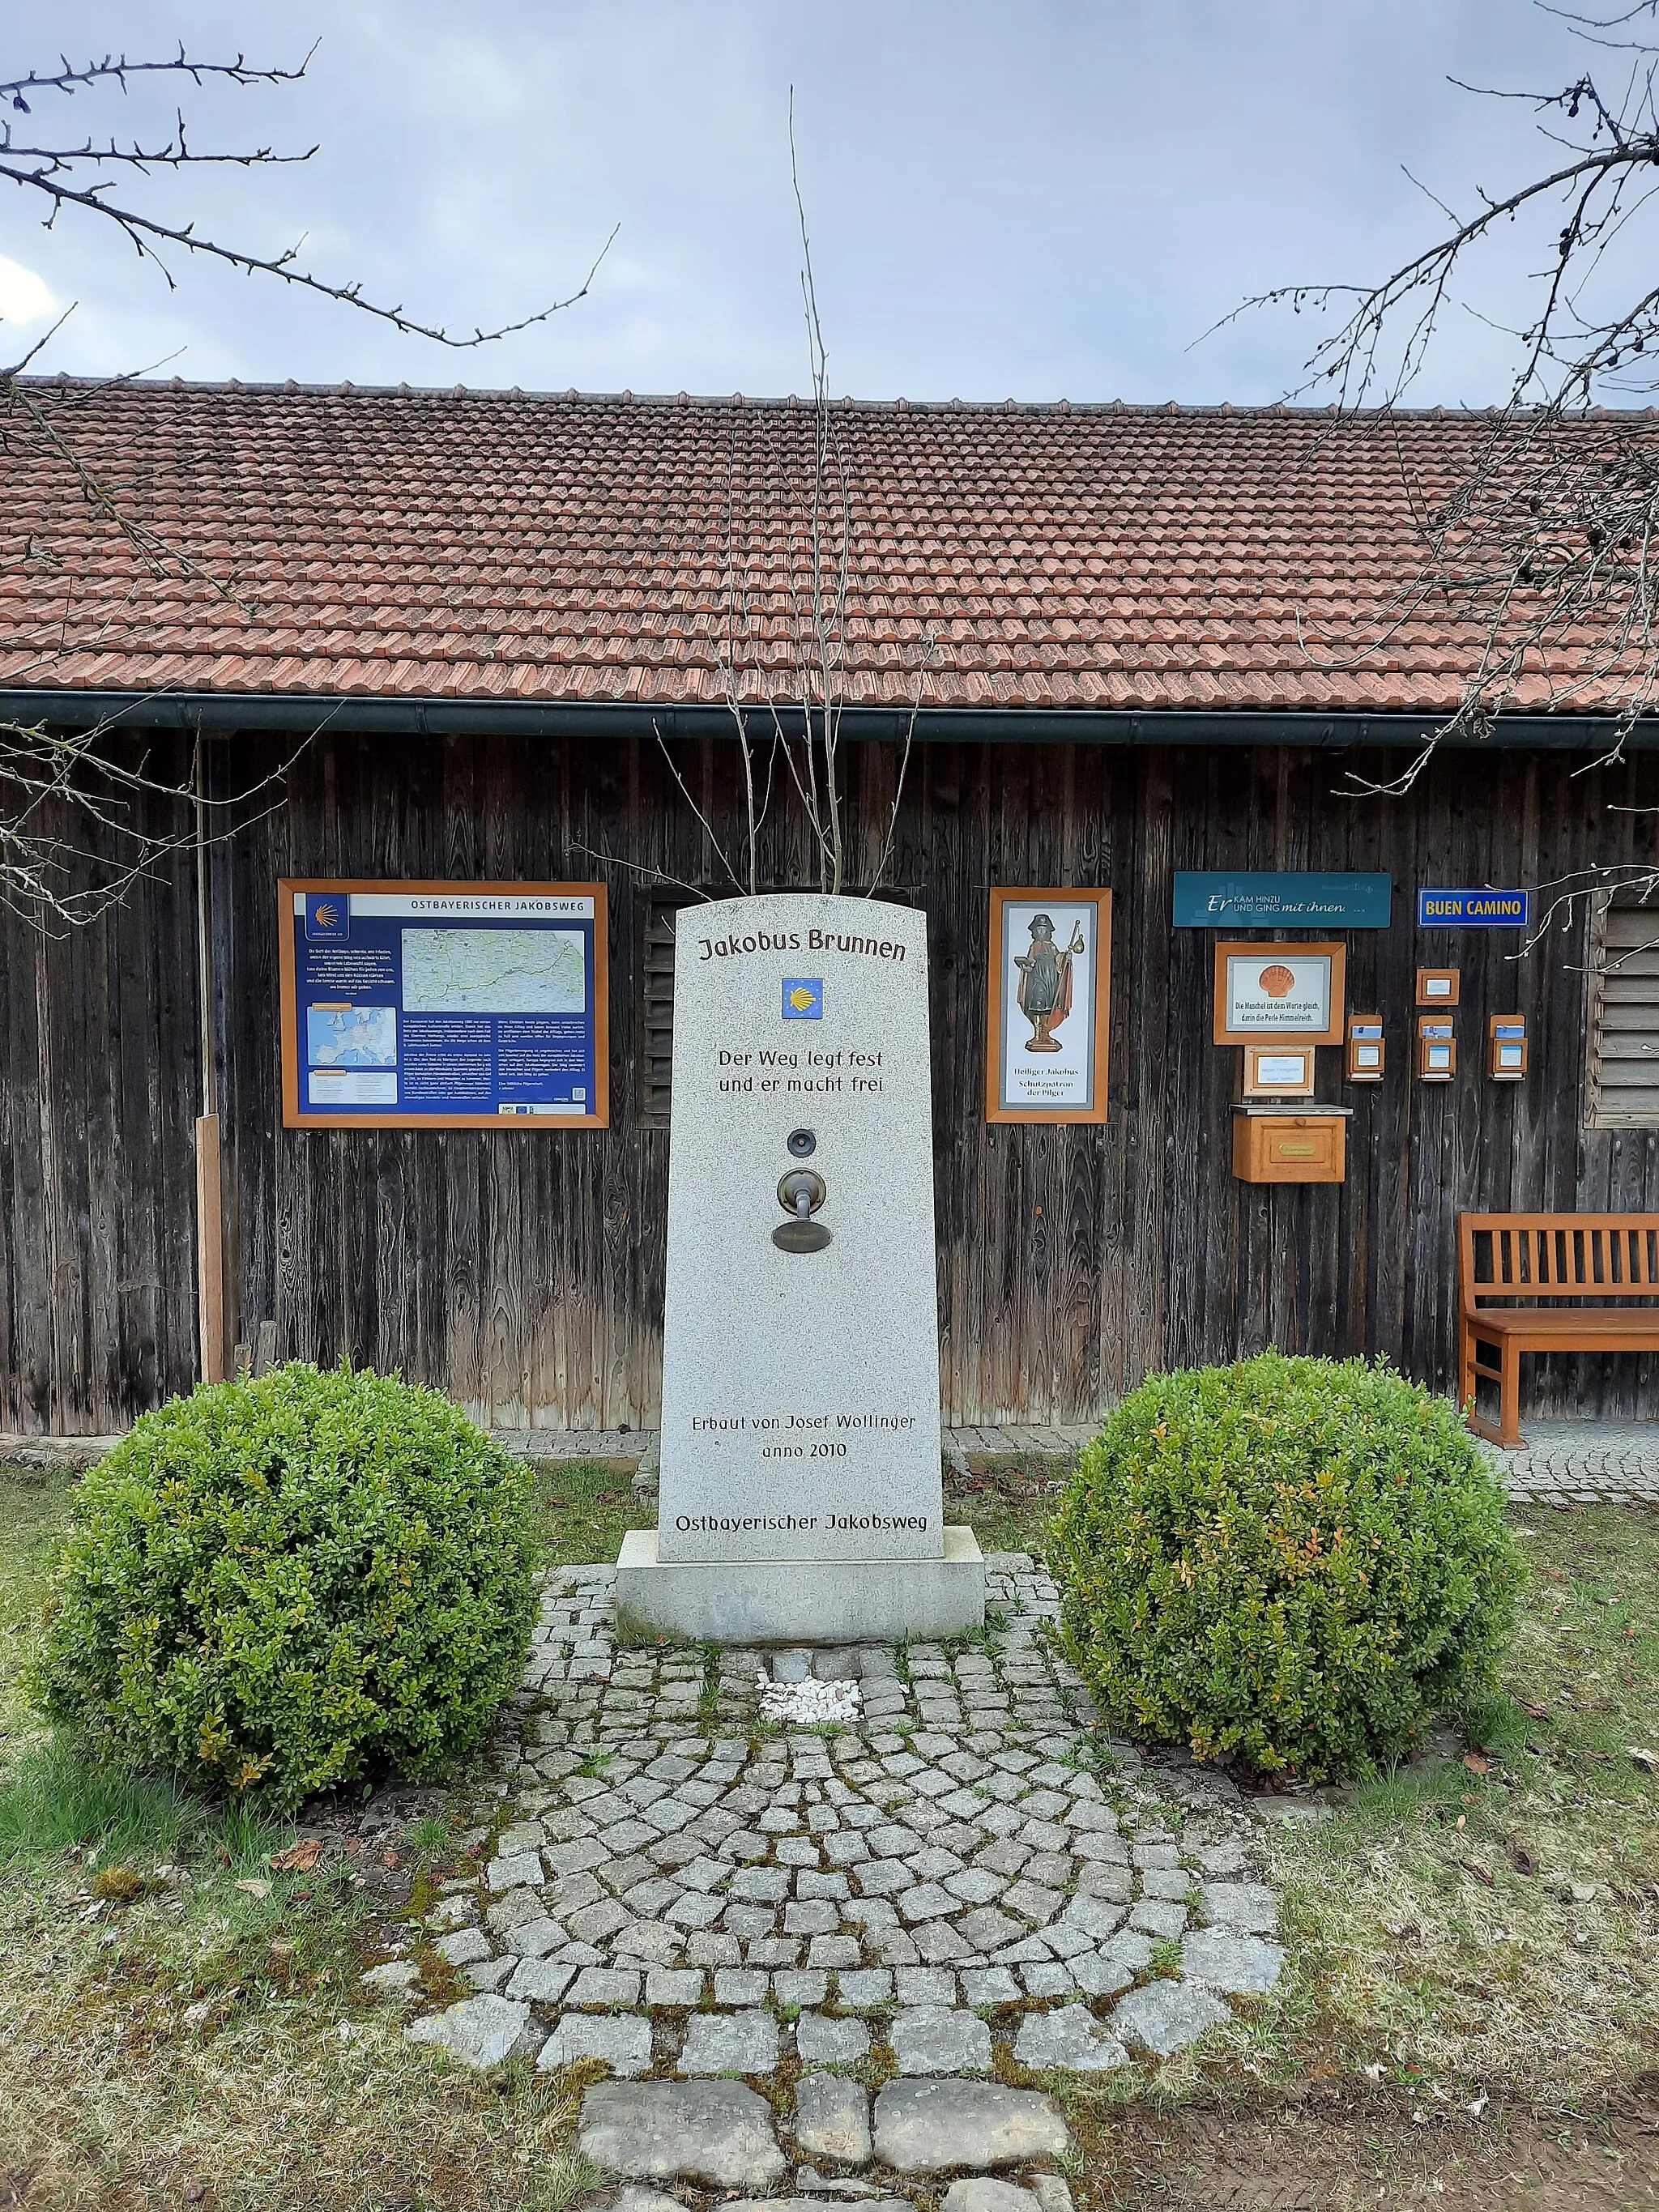 Photo showing: Dieser Jakobus-Brunnen wurde durch Josef Wollinger erbaut, damit sich Pilger auf dem Weg erfrischen können. Leming, Gem. Eschlkam